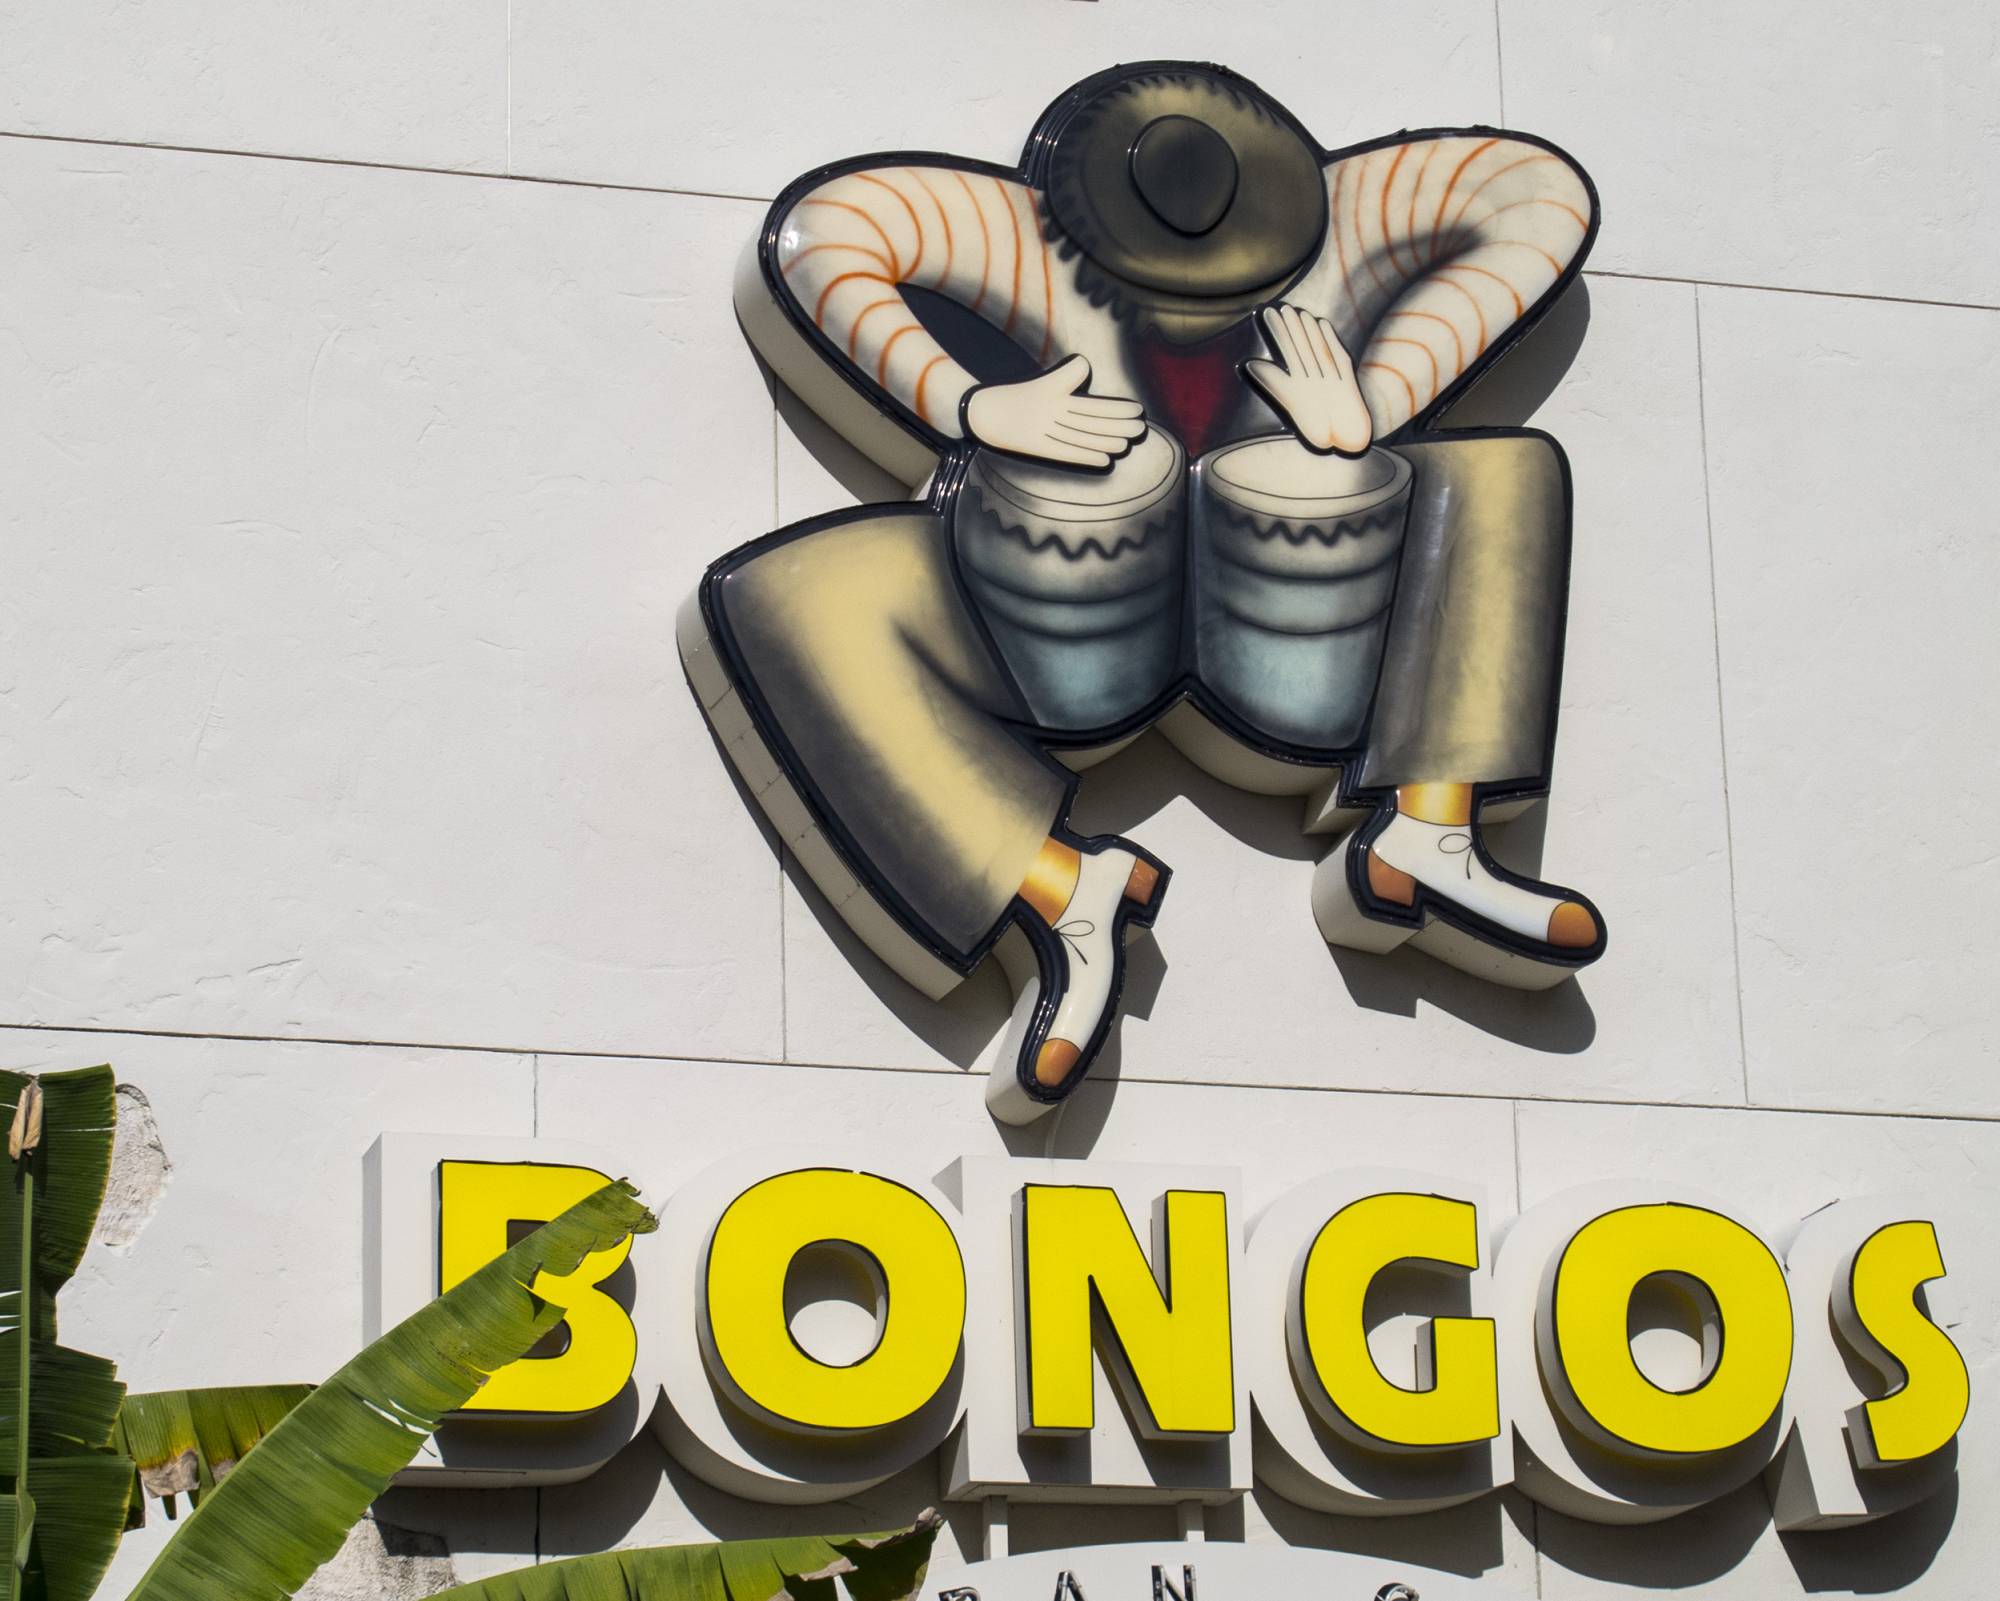 Bongos Cuban Cafe sign